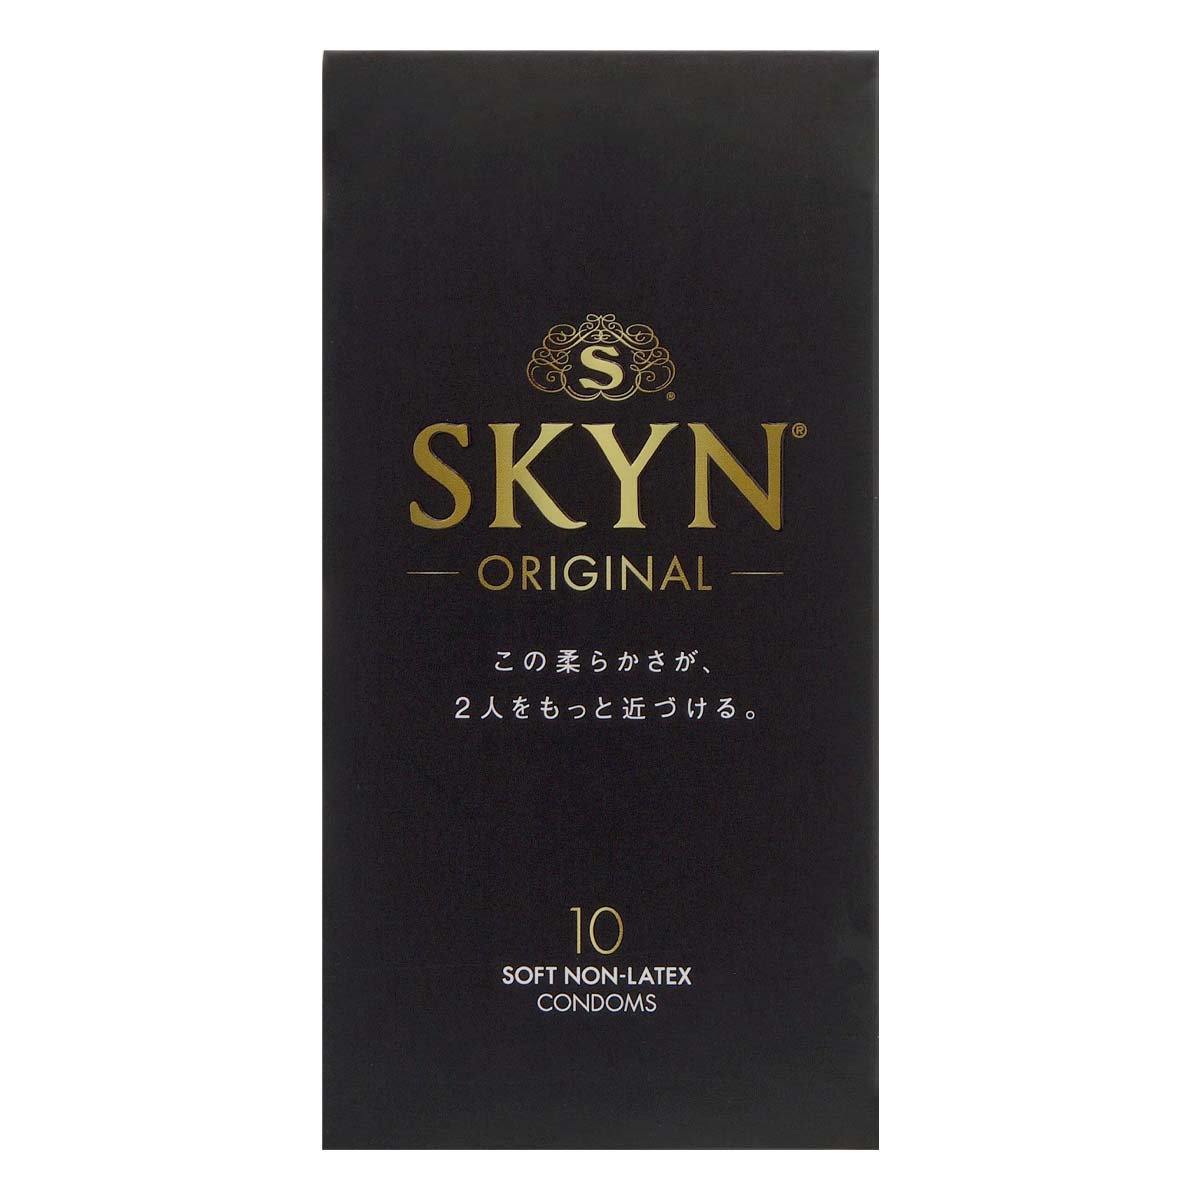 SKYN オリジナル iR コンドーム 10個入-p_2